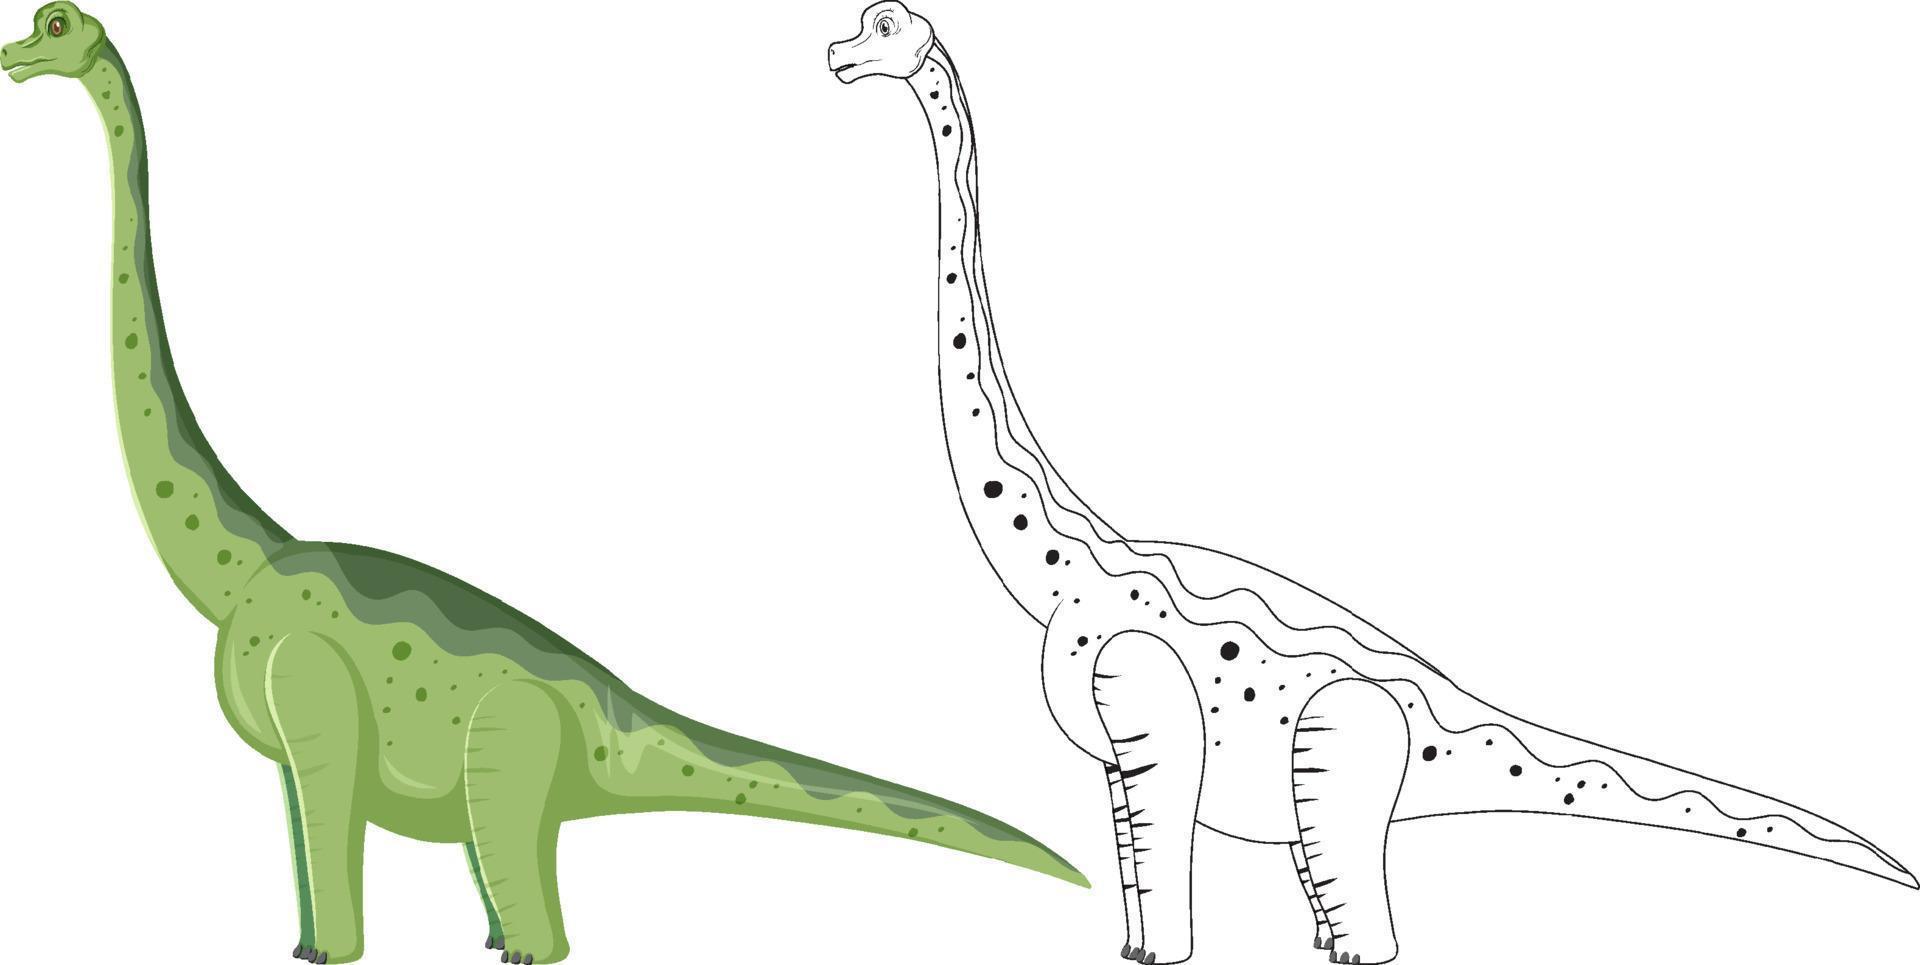 dinossauro braquiossauro com seu contorno doodle no fundo branco vetor